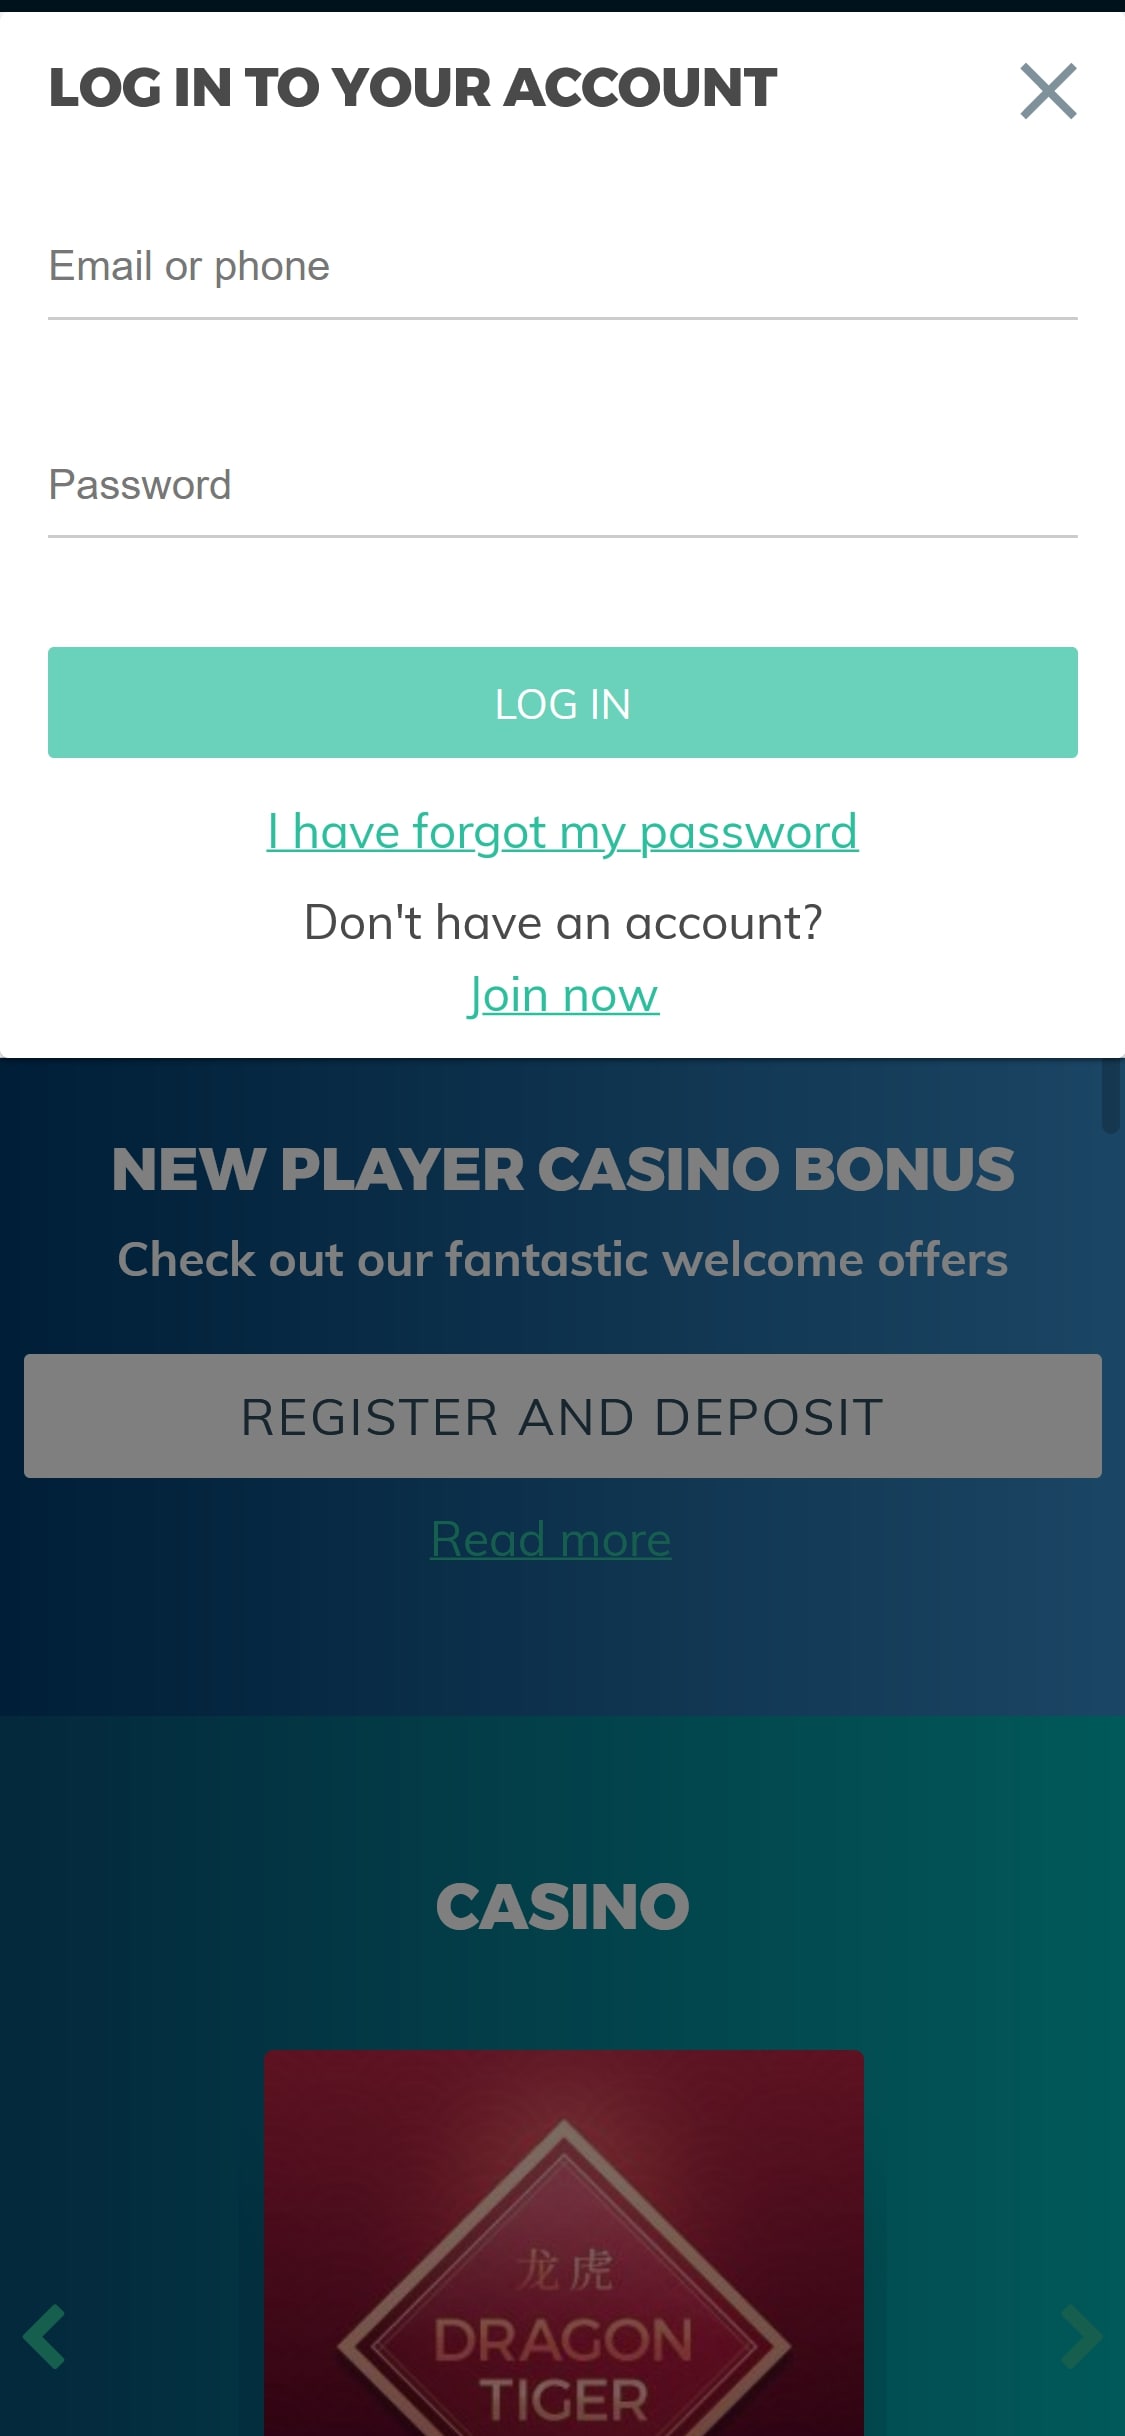 Euro Lotto Casino Mobile Login Review